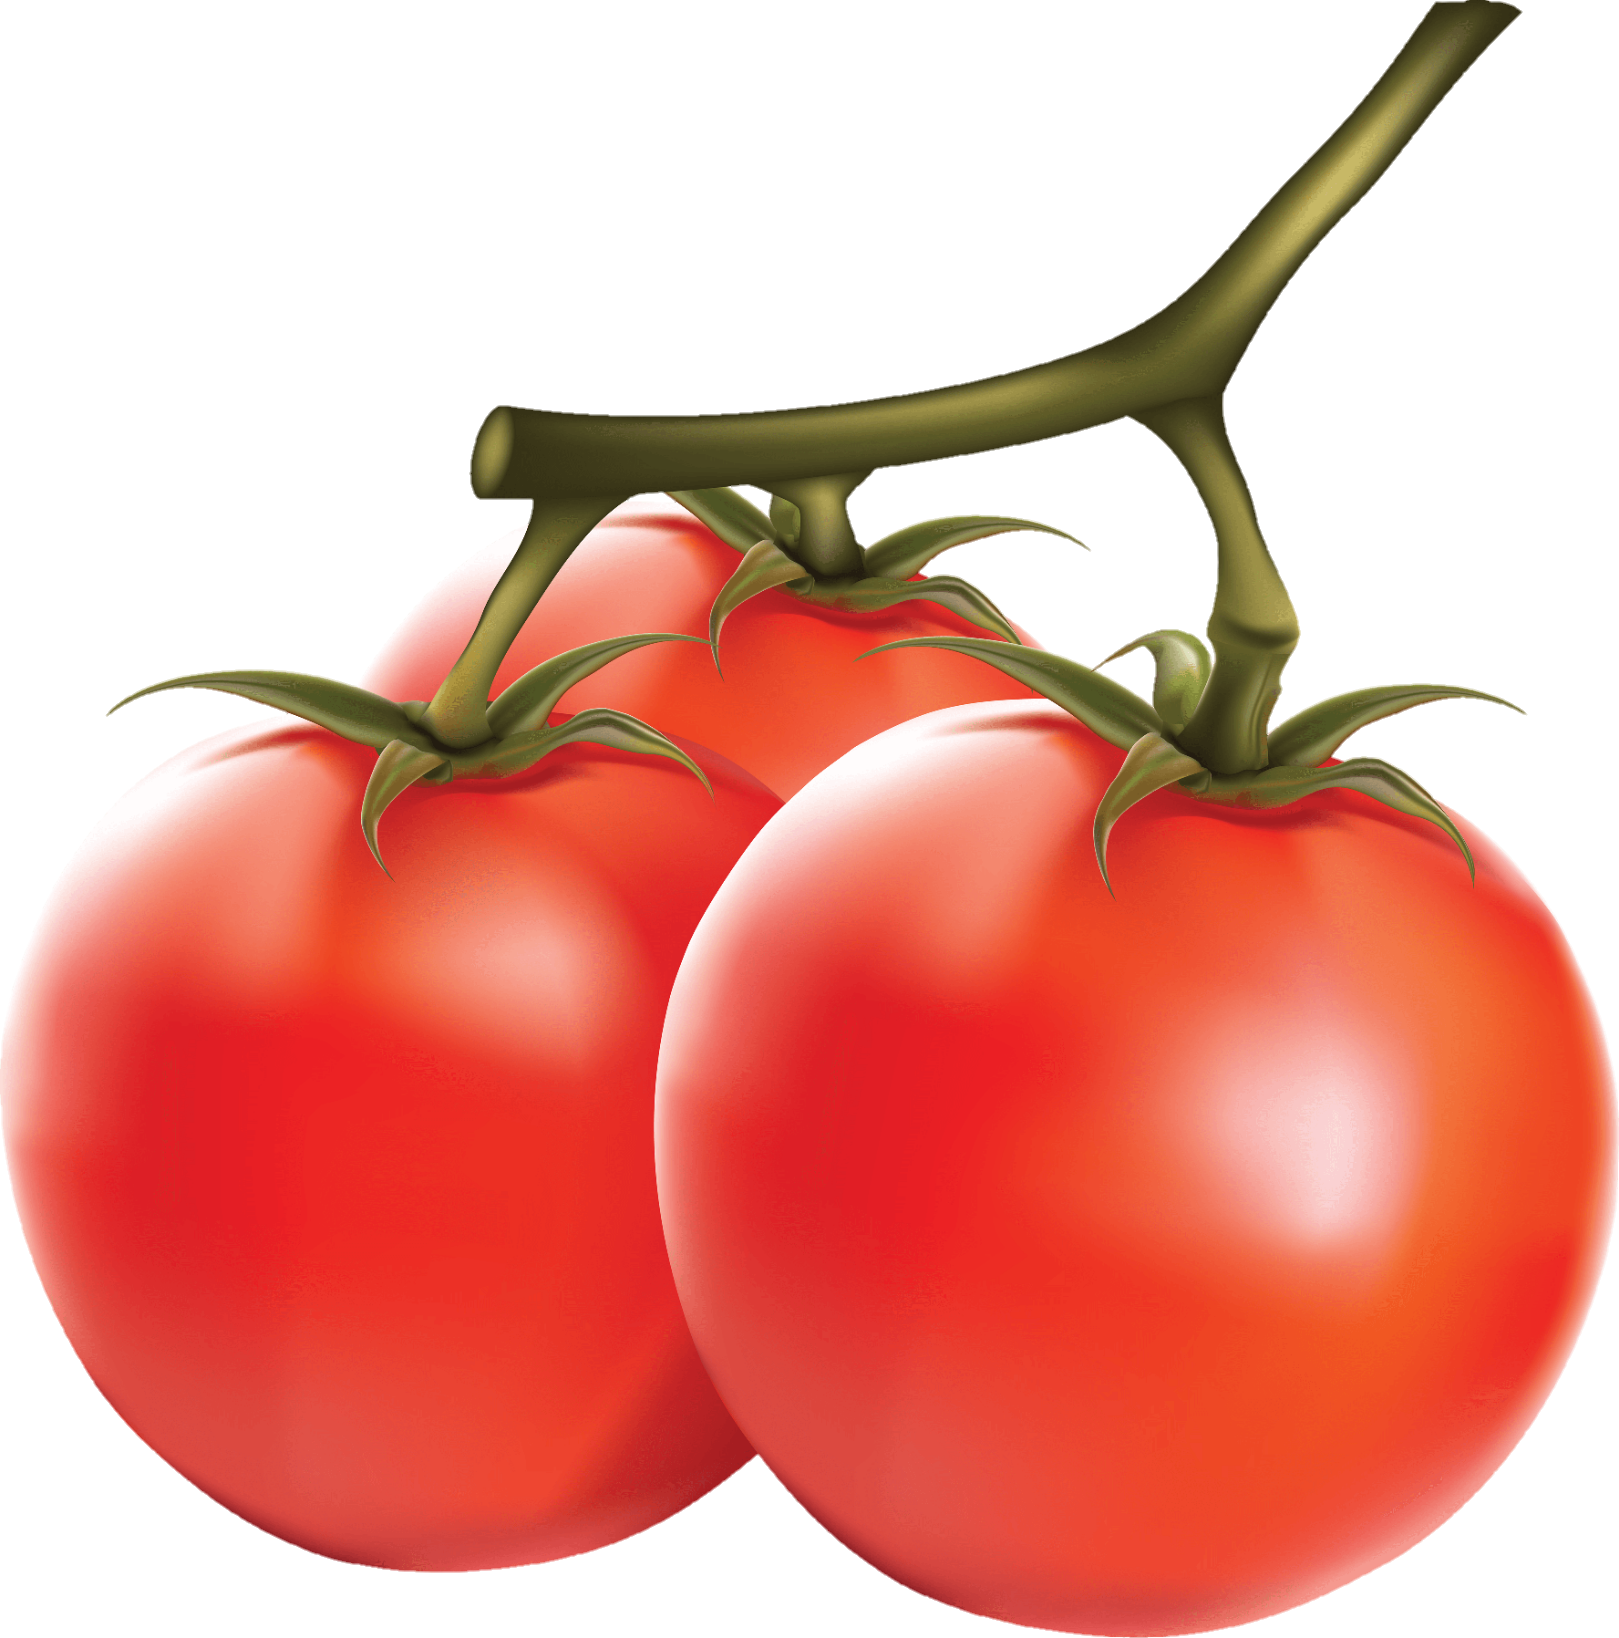 Tomato-26